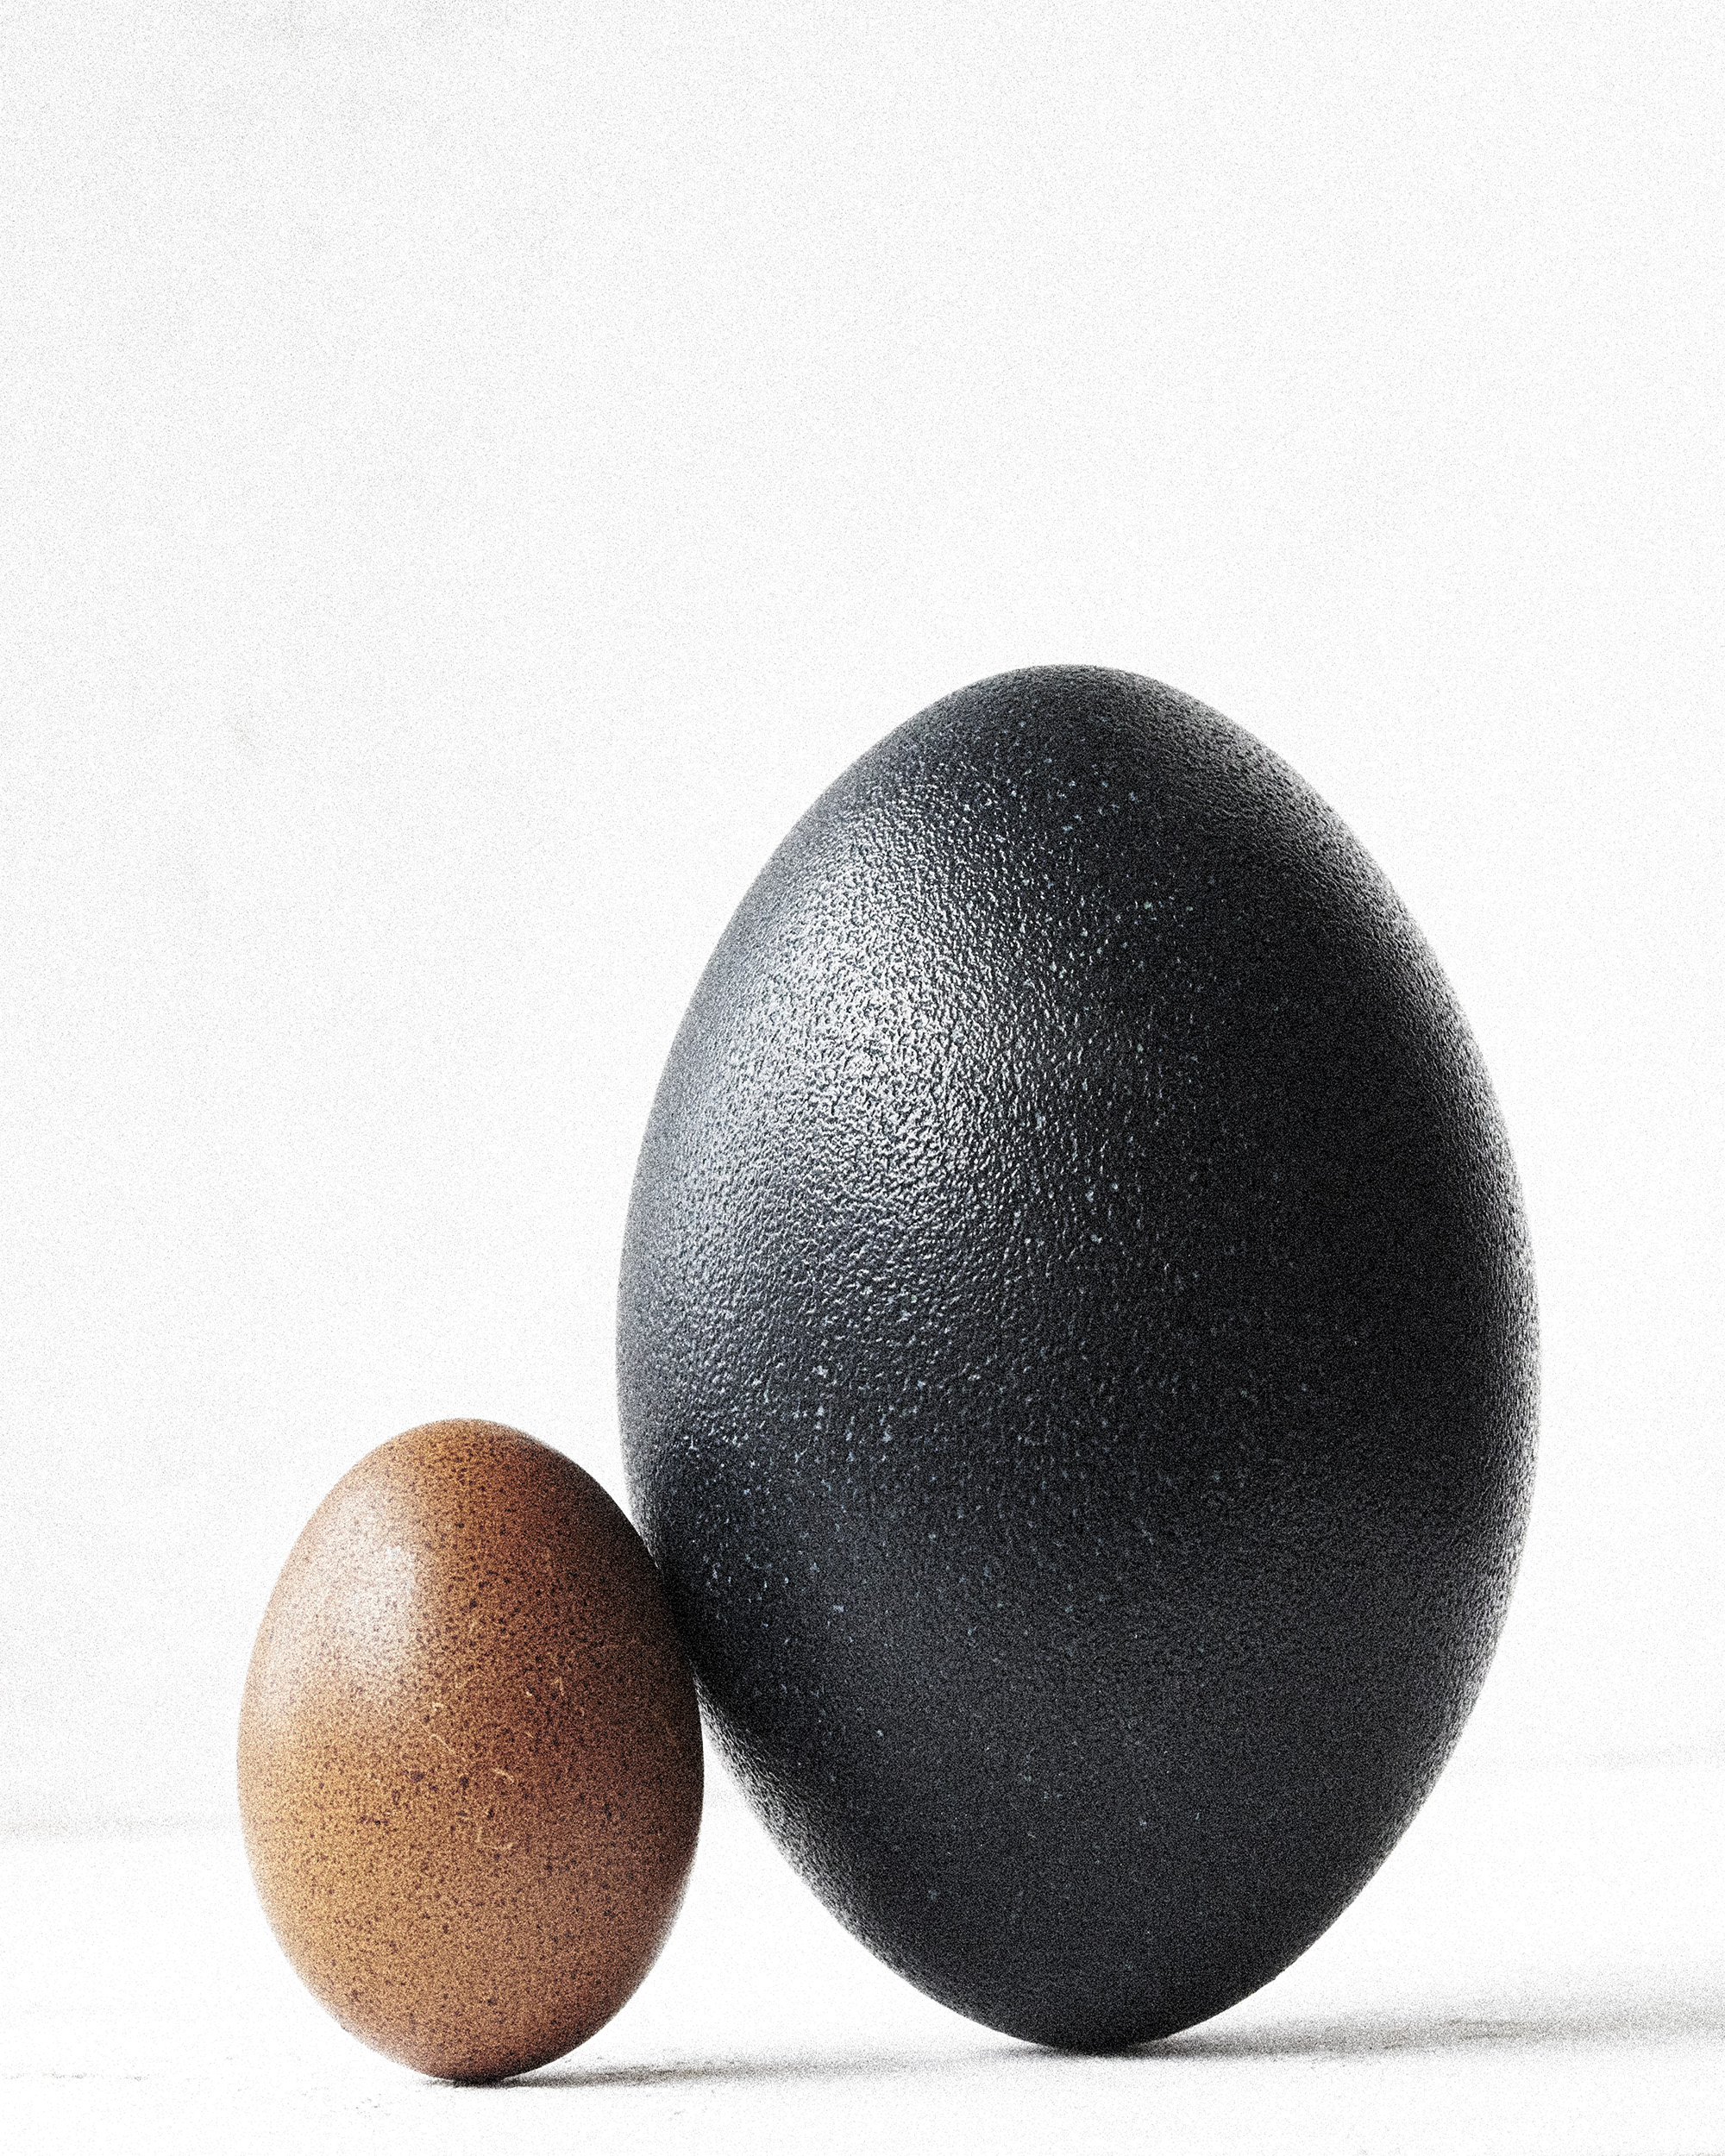 Egg3.jpg